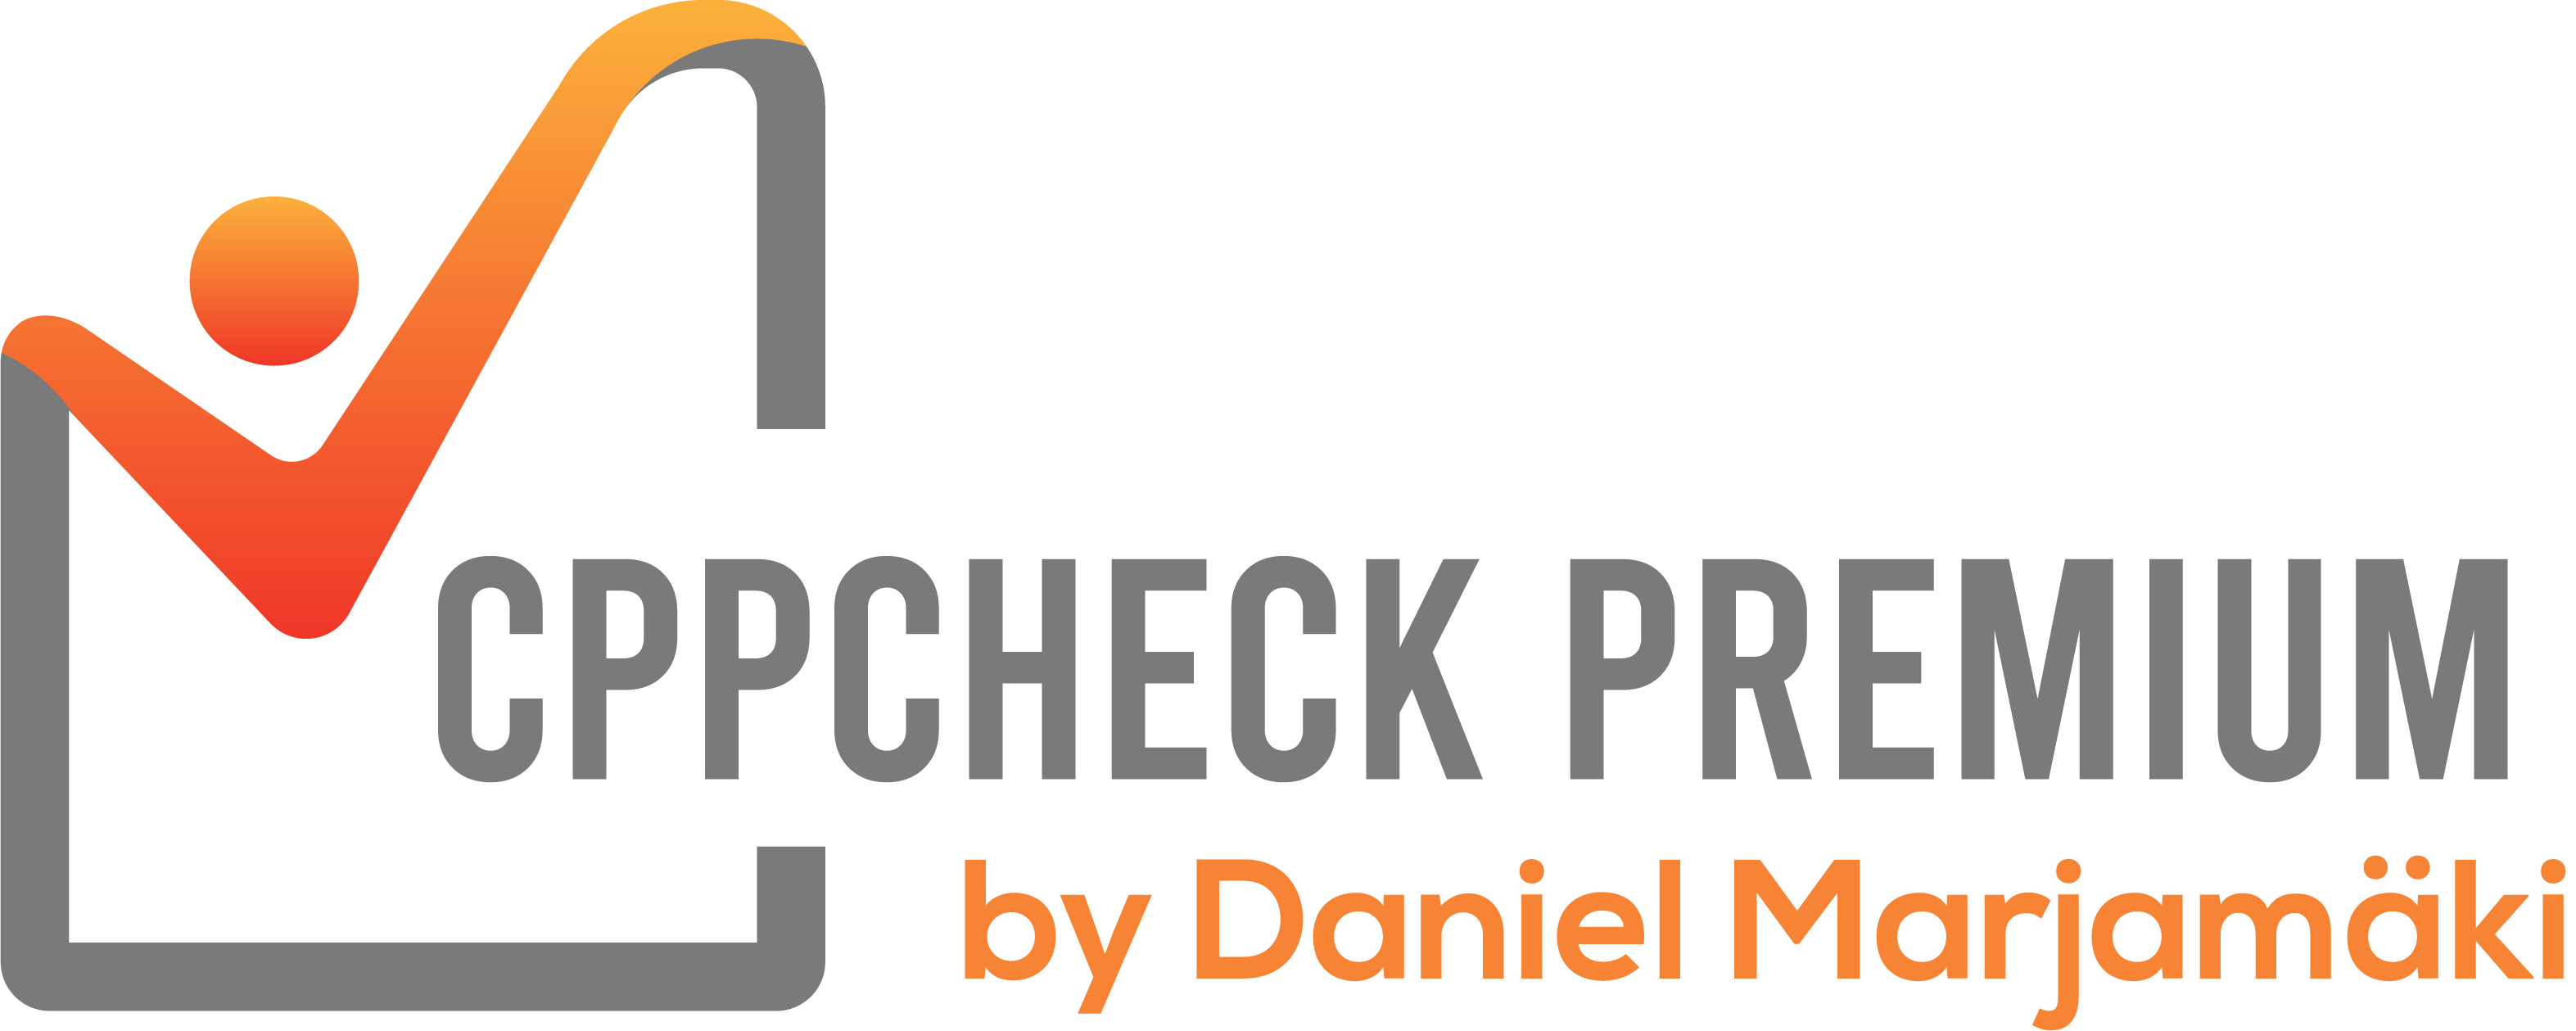 Cppcheck Premium